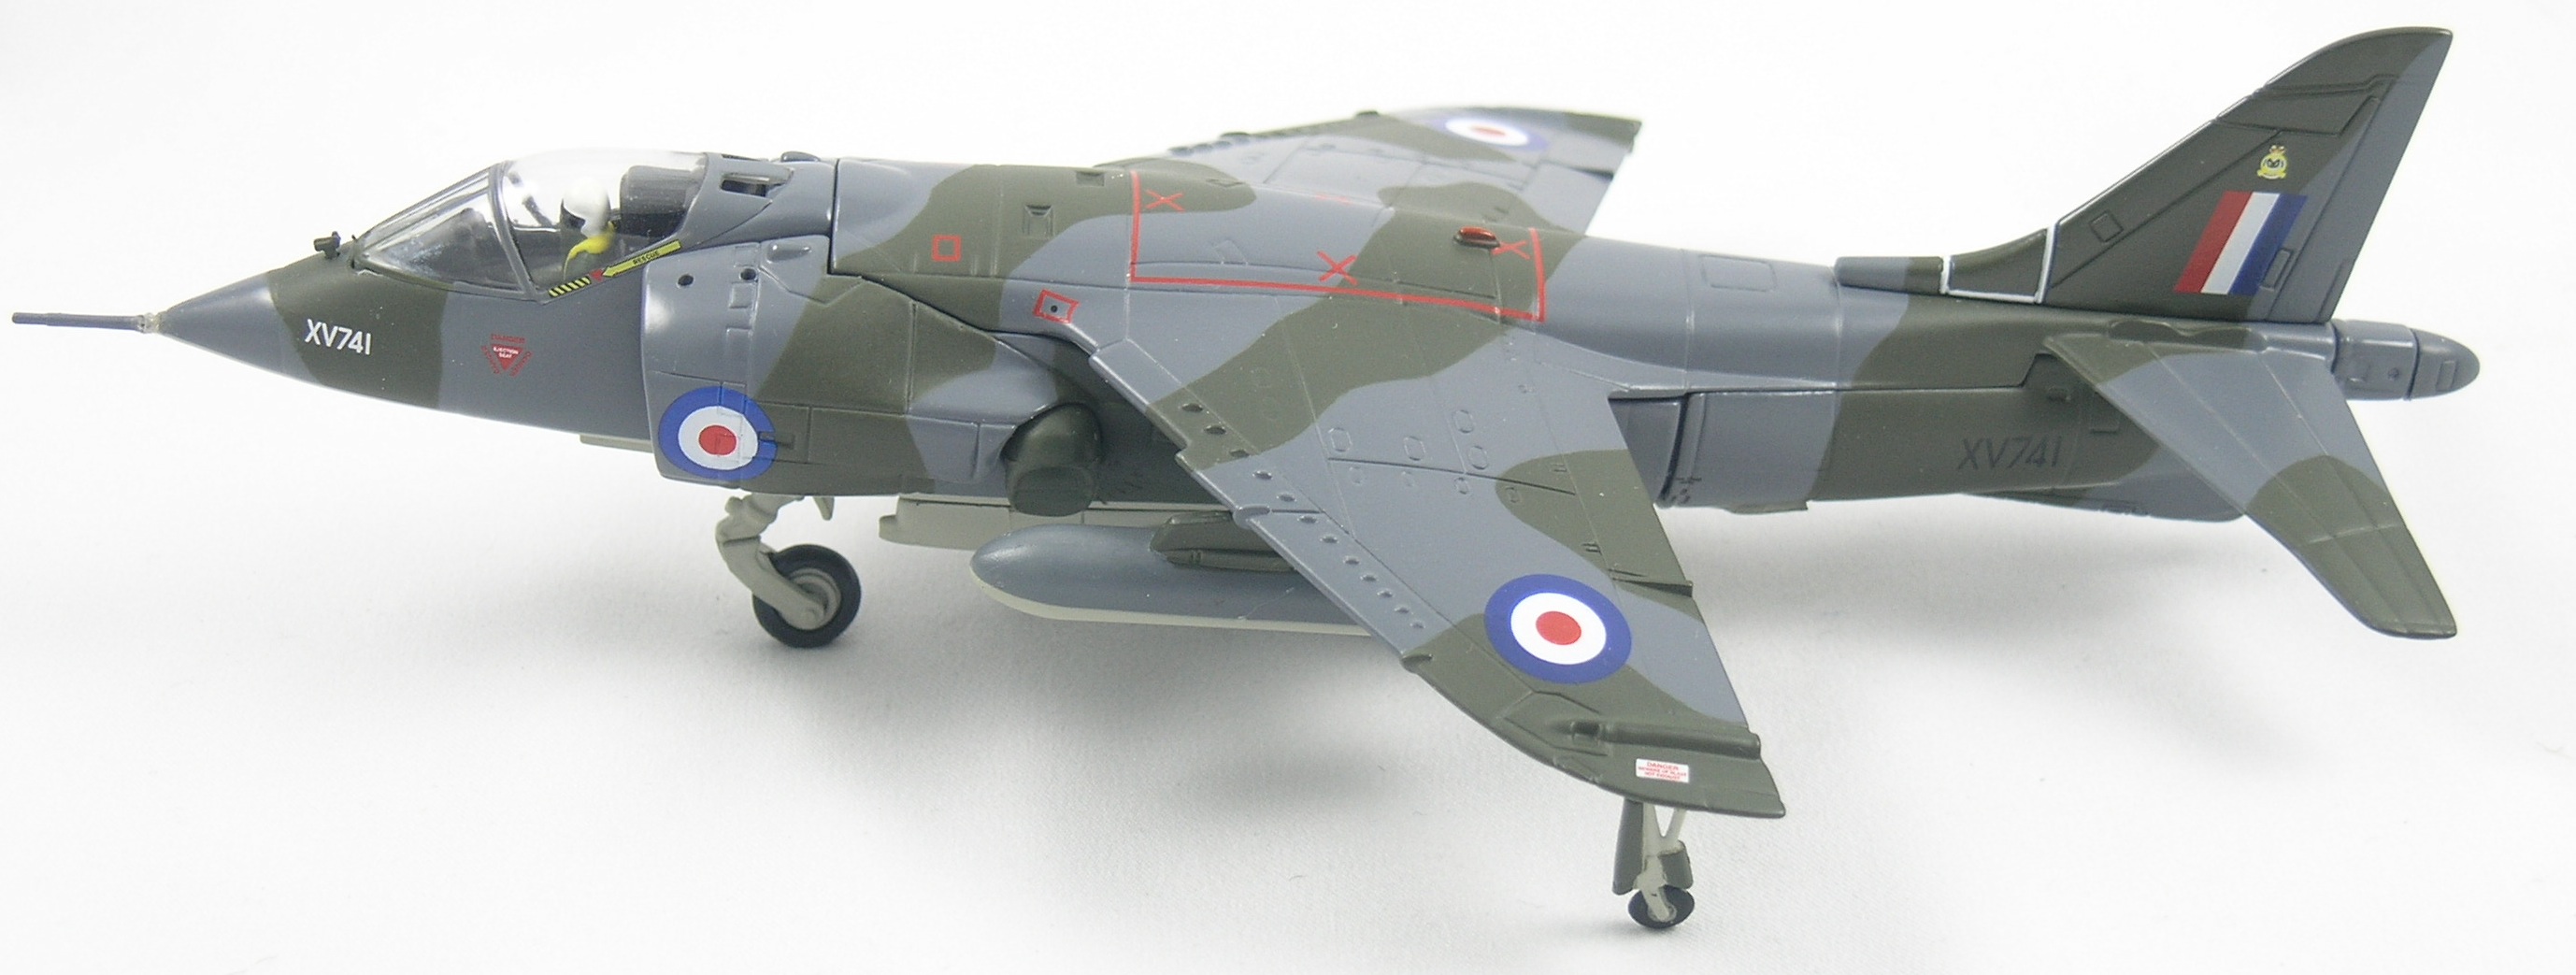 Harrier-AA32404-Top